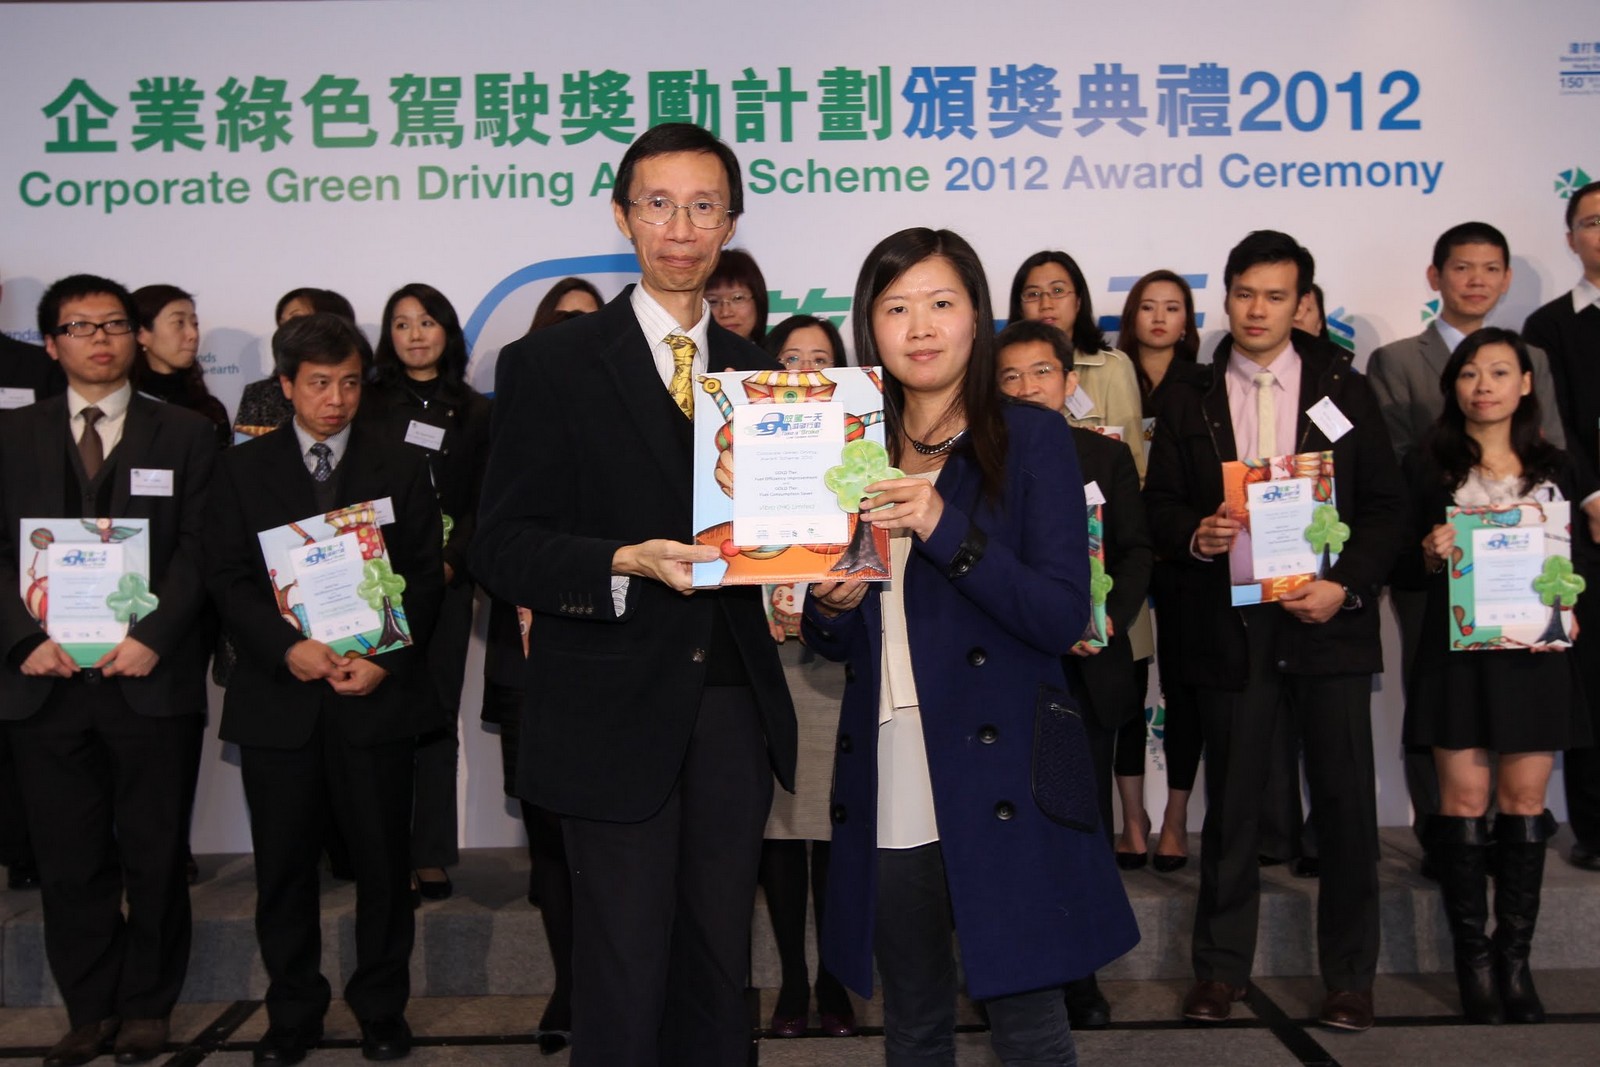 高級機械工程師梁翠萍小姐代表惠保(香港)領取「燃油用量減幅」金獎及「燃油效益改善」金獎